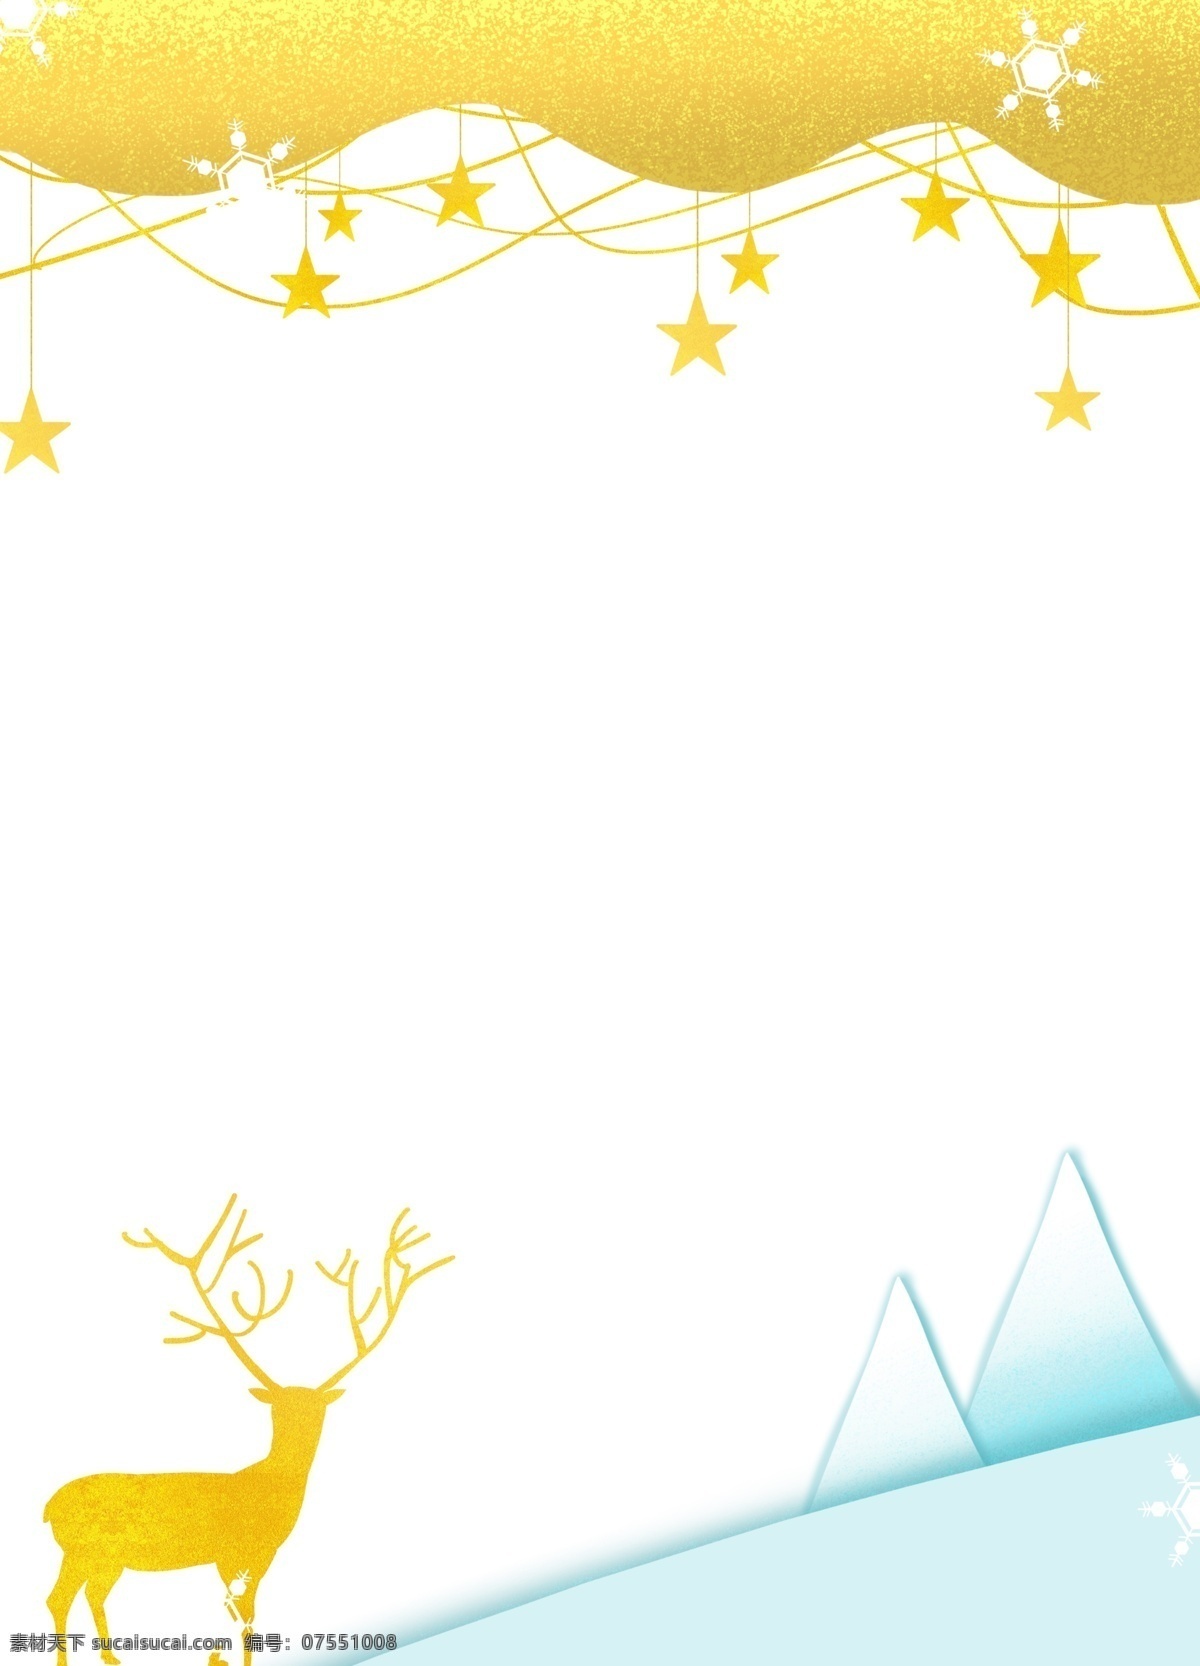 圣诞节 黄色 麋鹿 边框 手绘 可爱 五角星 挂饰 漂亮的边框 唯美边框 边框插画